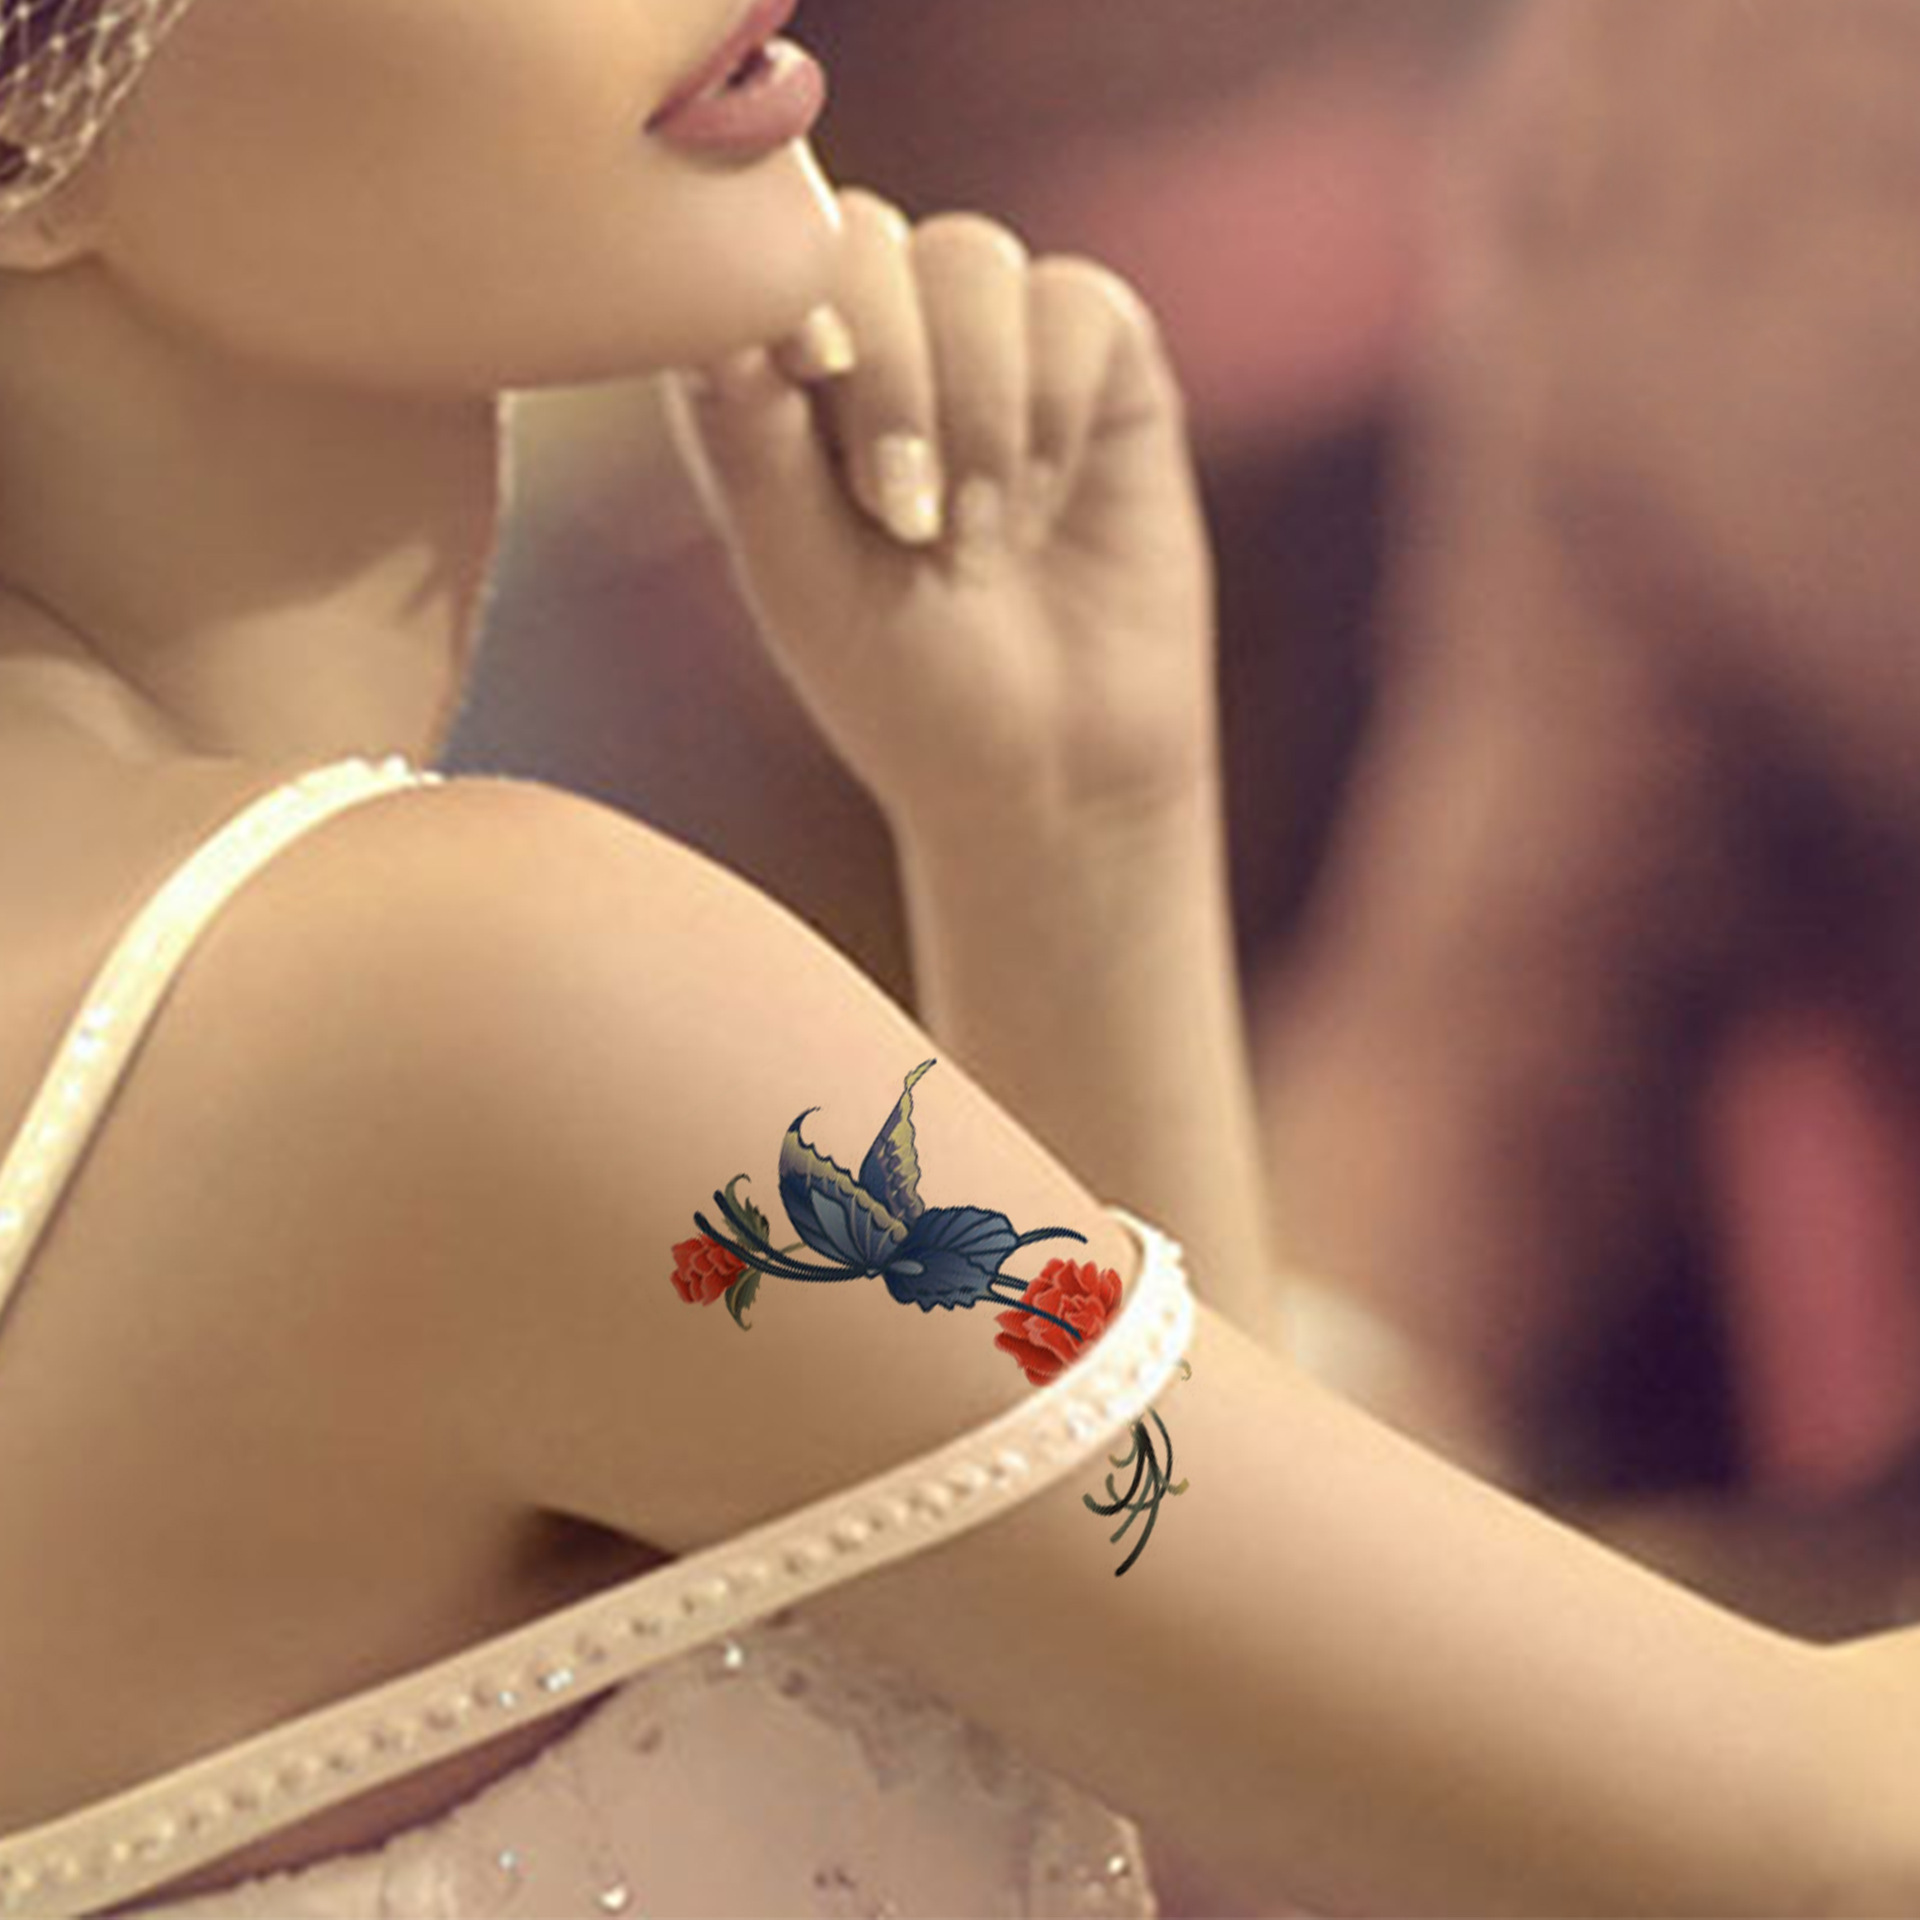 蝶恋花纹身，女生胳膊上的彩绘蝴蝶和玫瑰花精美纹身小图案图片第1张图片